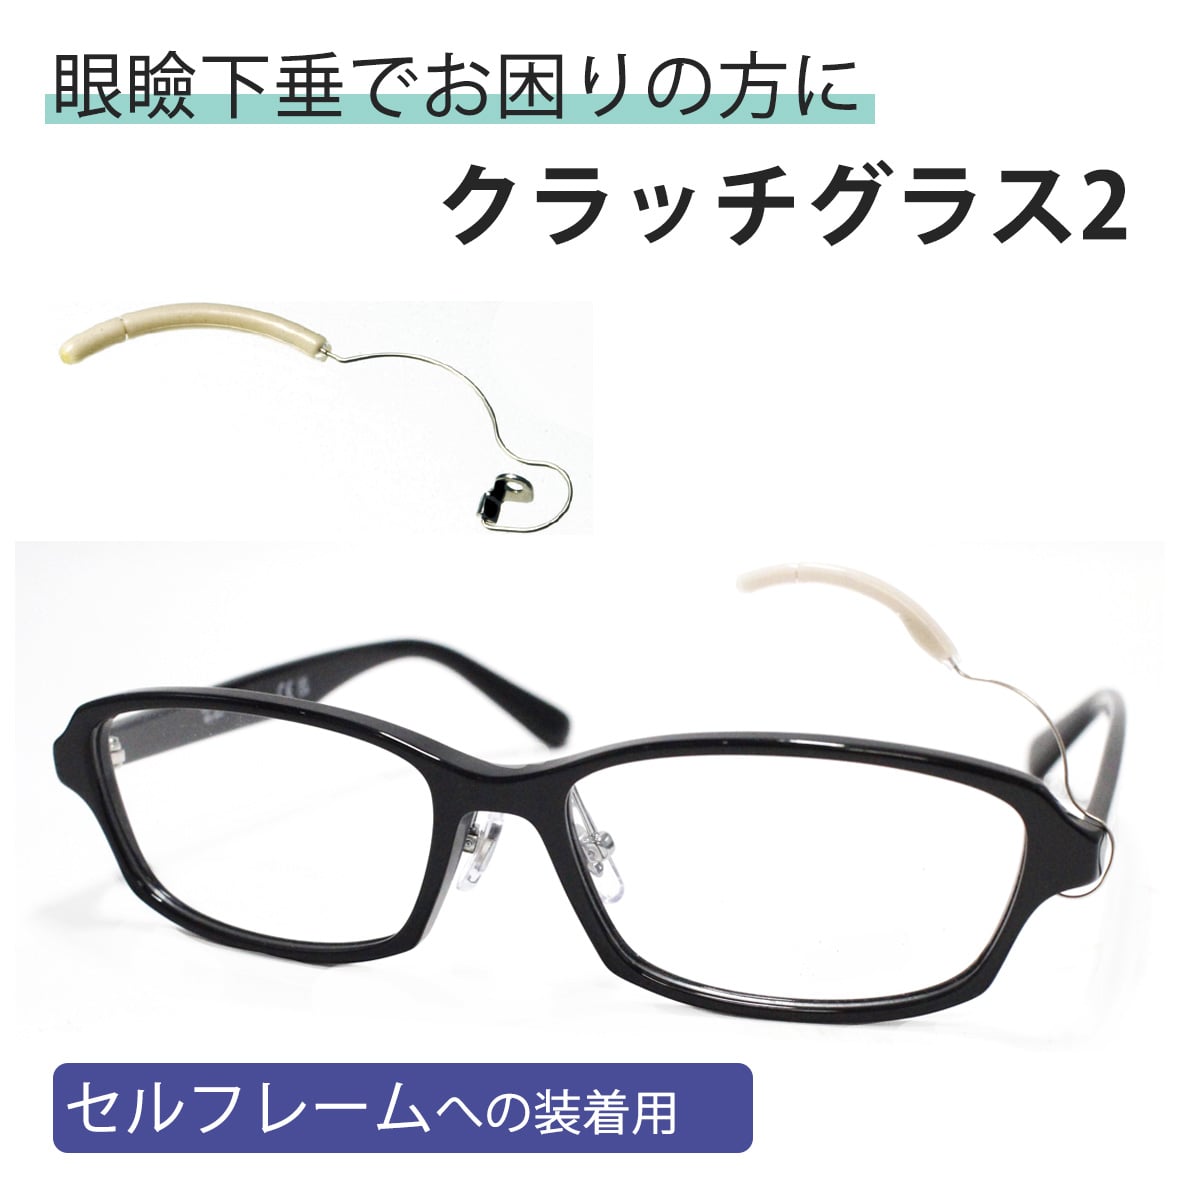 クラッチグラス2 眼鏡 パーツ 矯正 まぶた フレーム 取り付け 視力障害 解消 便利 アイテム アイデア グッズ 視力広がる 引き上げ 瞼を持ち上げる アルファ がんけんかすい メガネ くらっちぐらす めがね